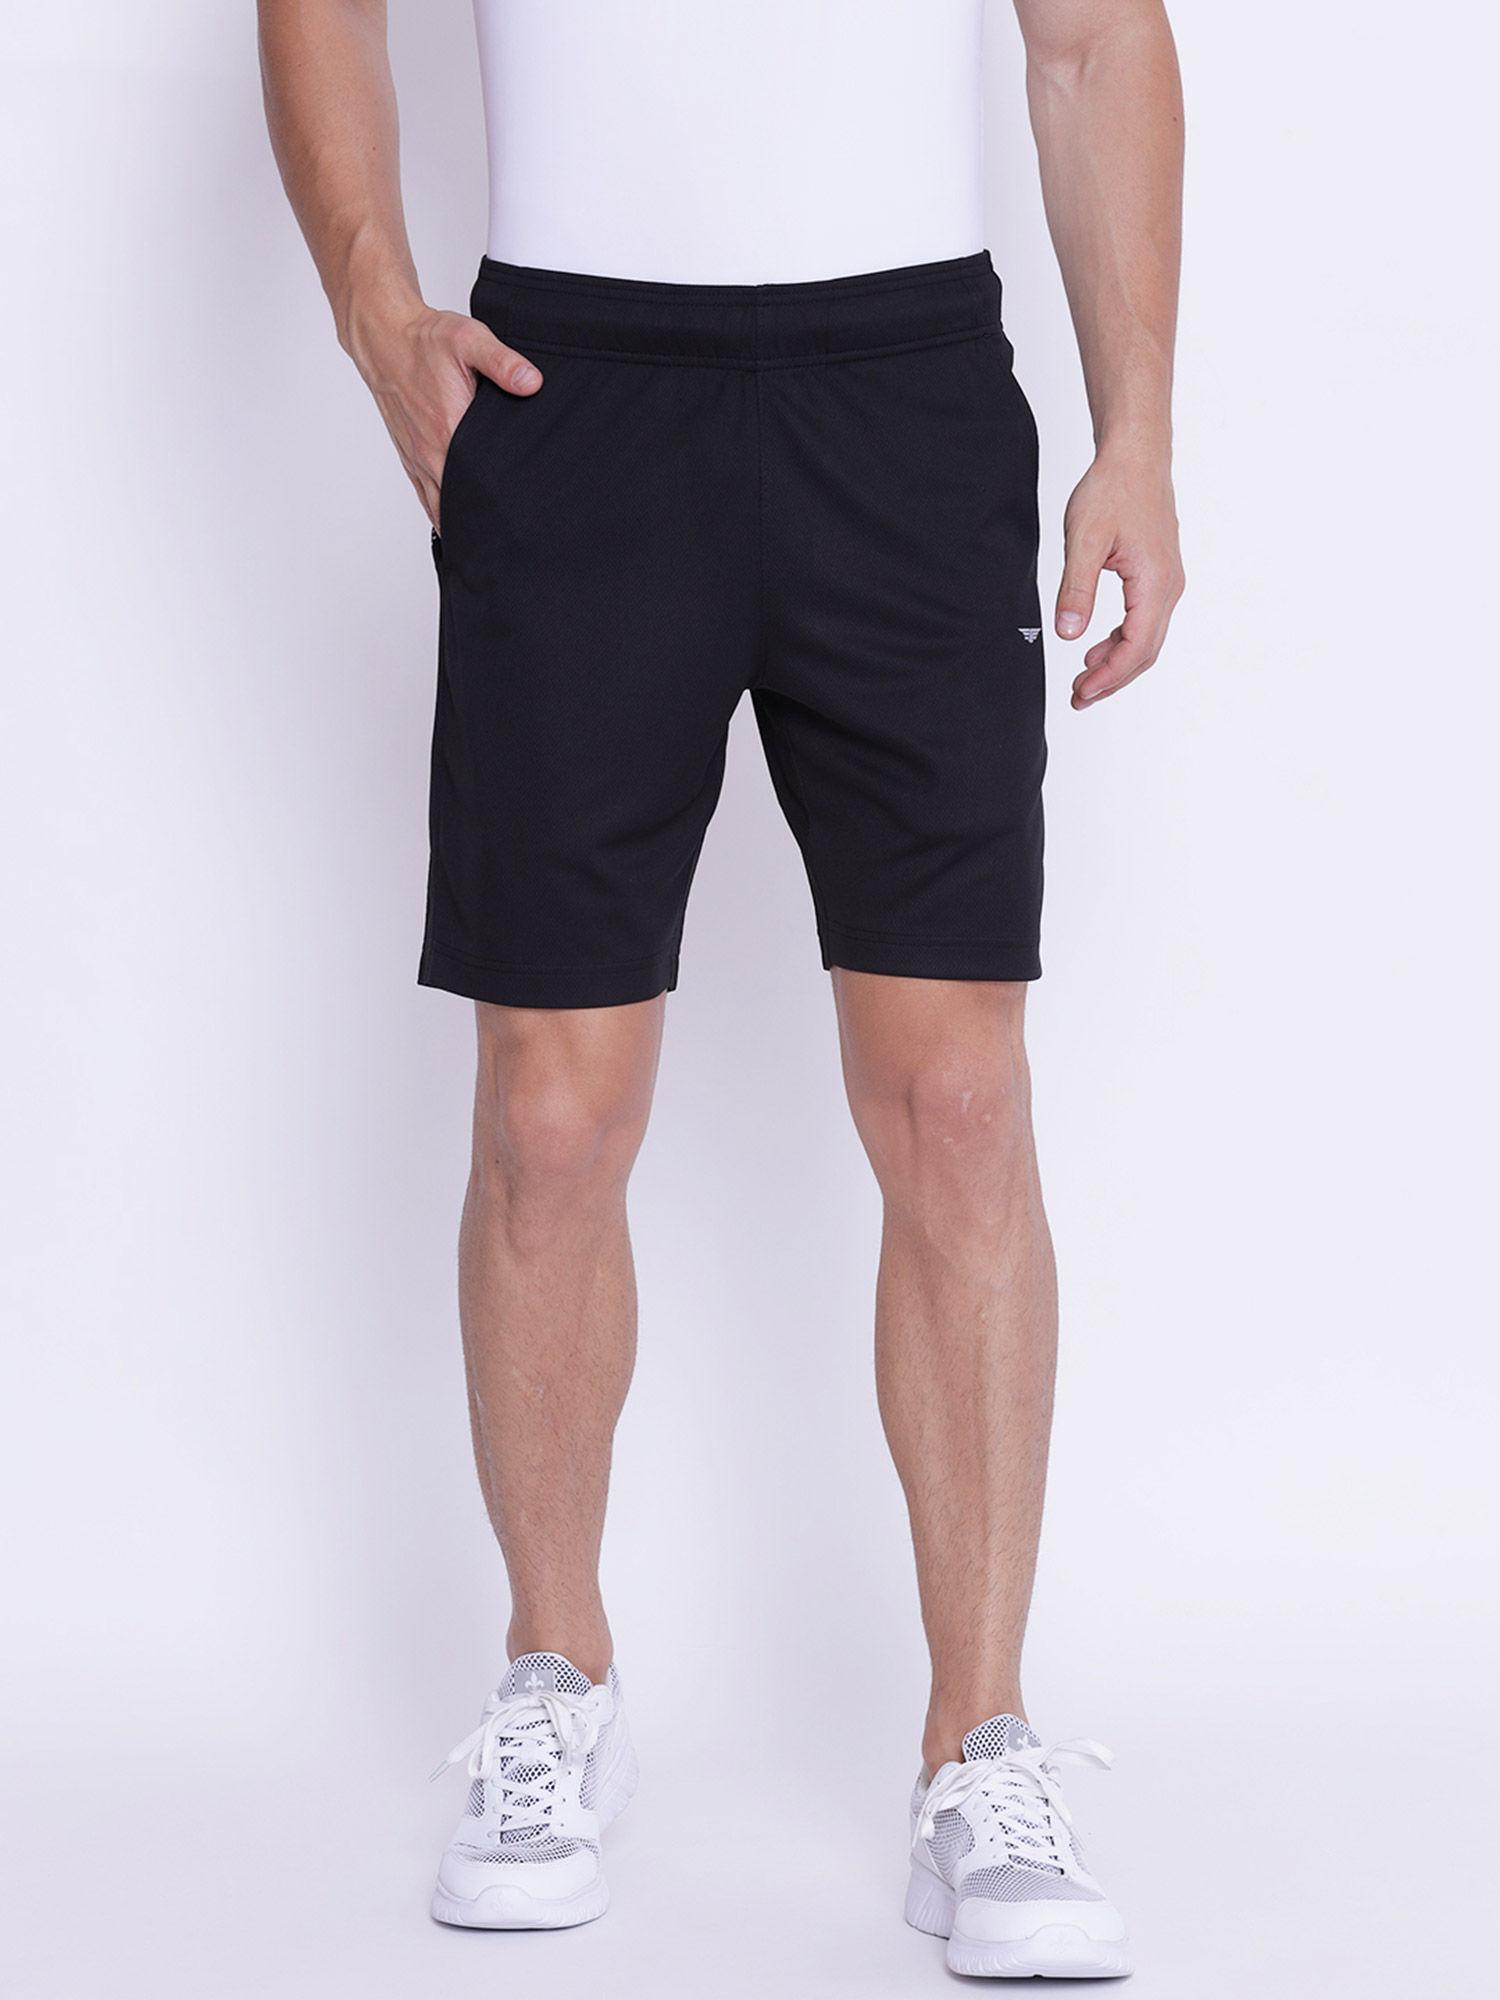 men black active wear shorts